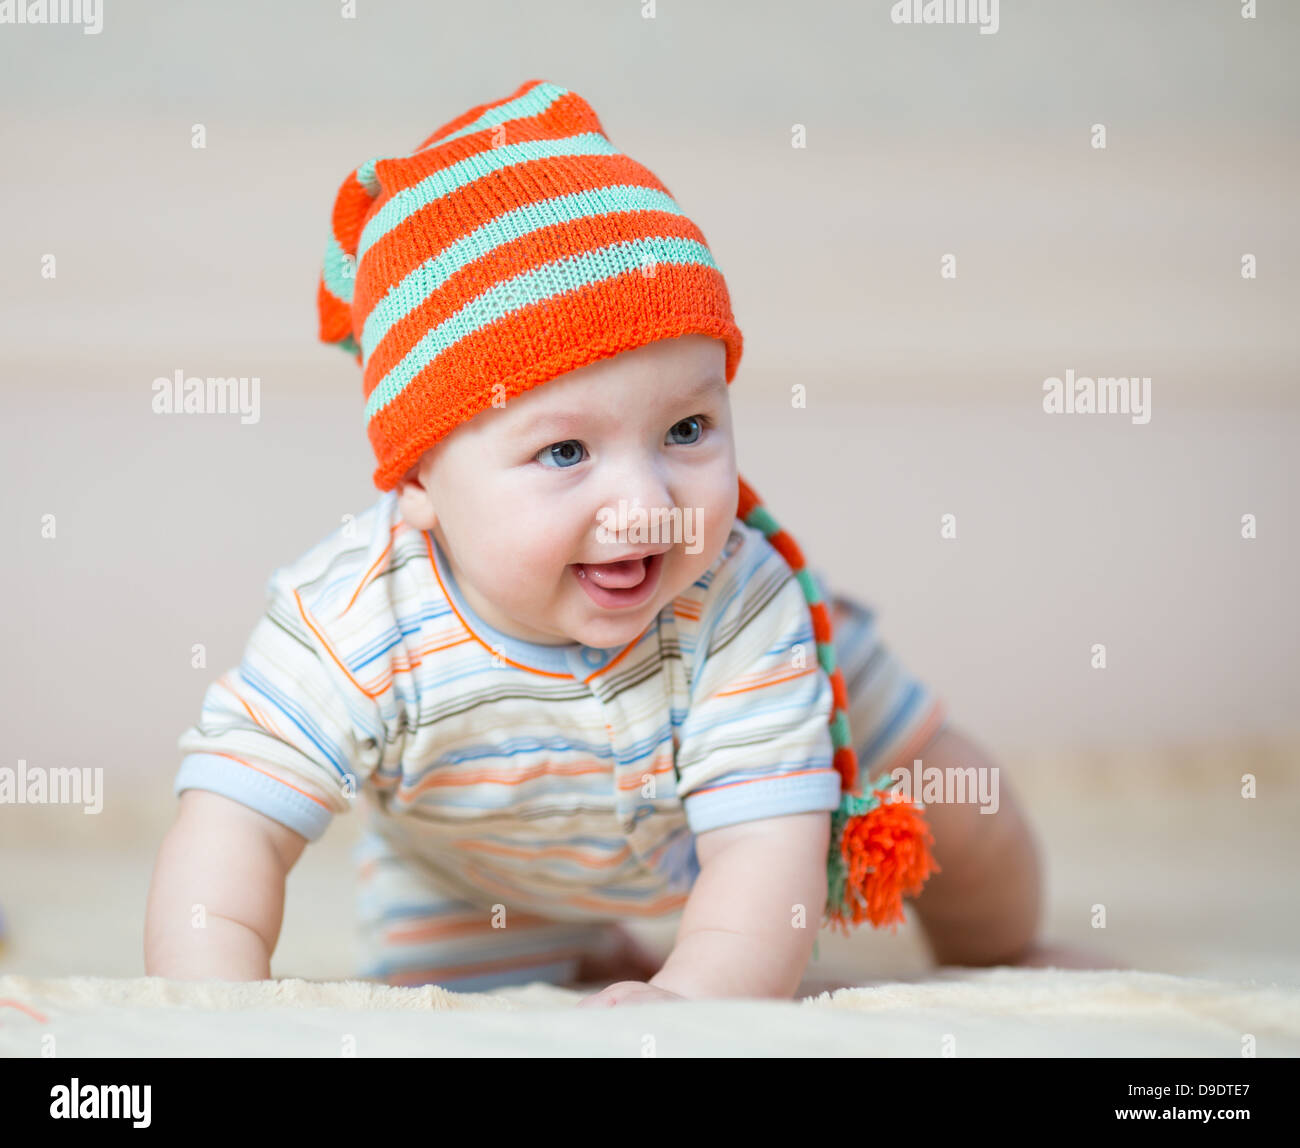 happy baby boy weared in hat Stock Photo